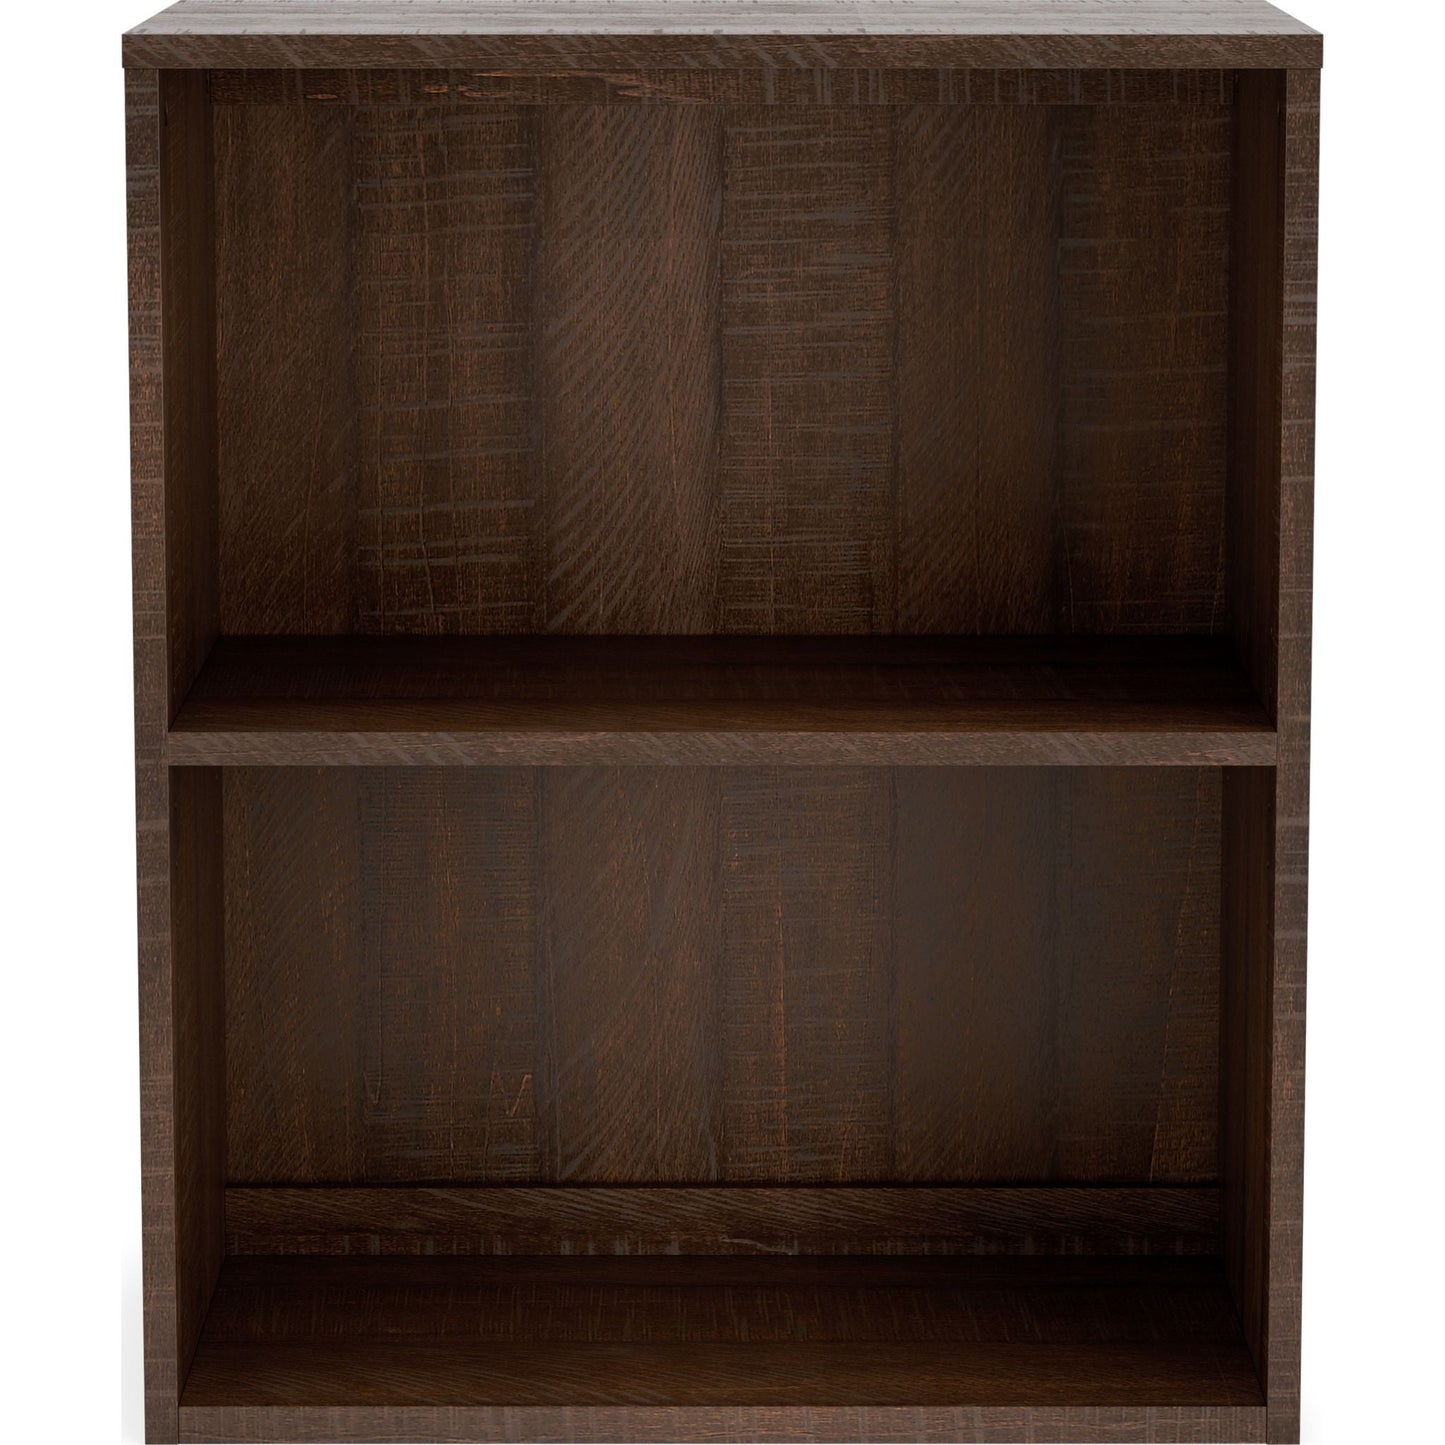 Camiburg Small Bookcase - Warm Brown